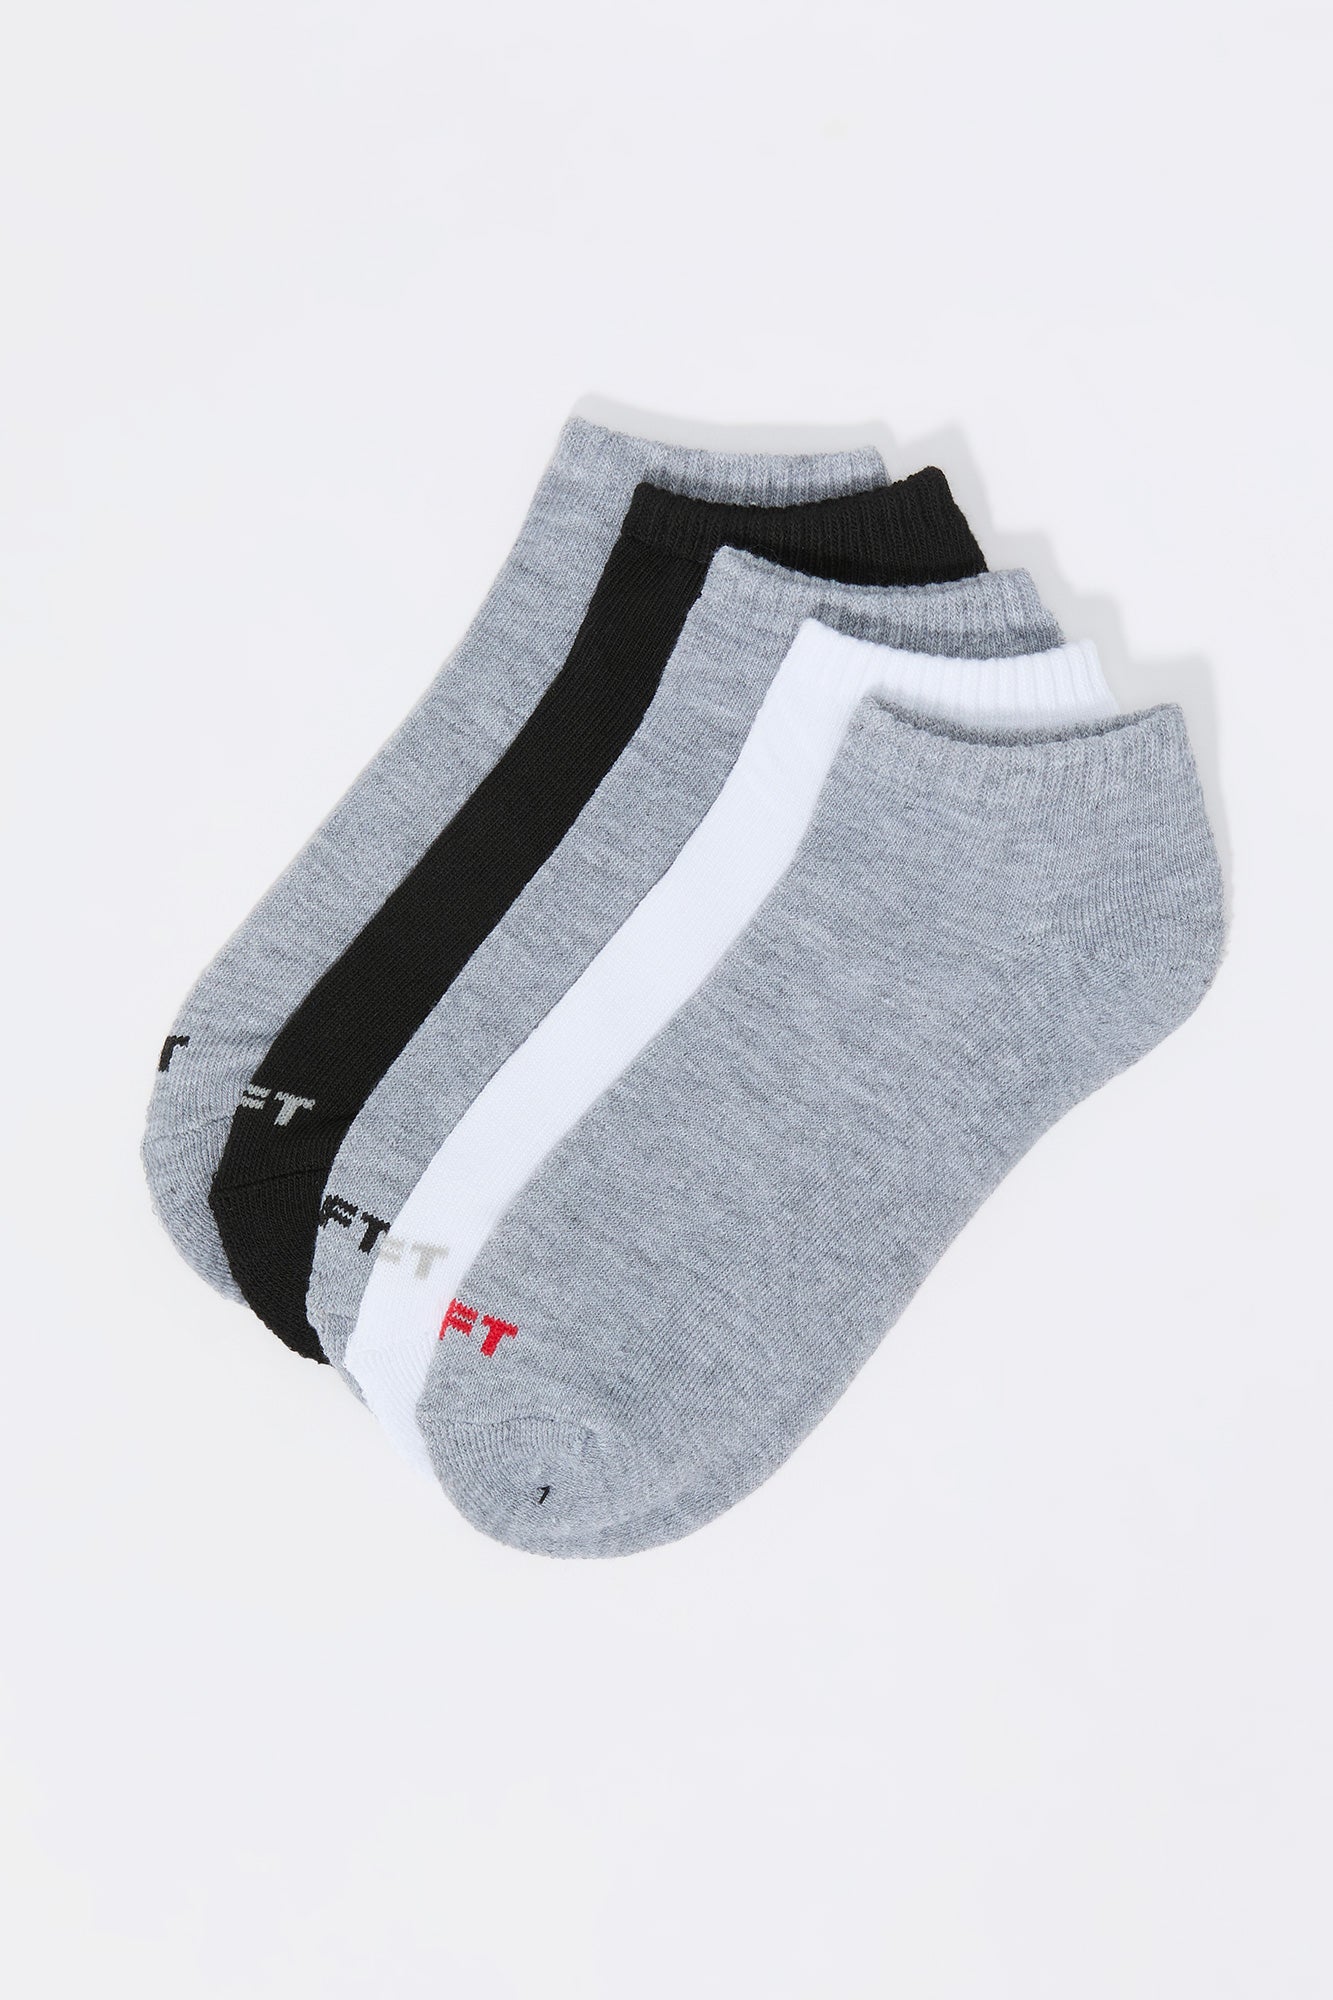 Boys Ankle Socks (5 Pack